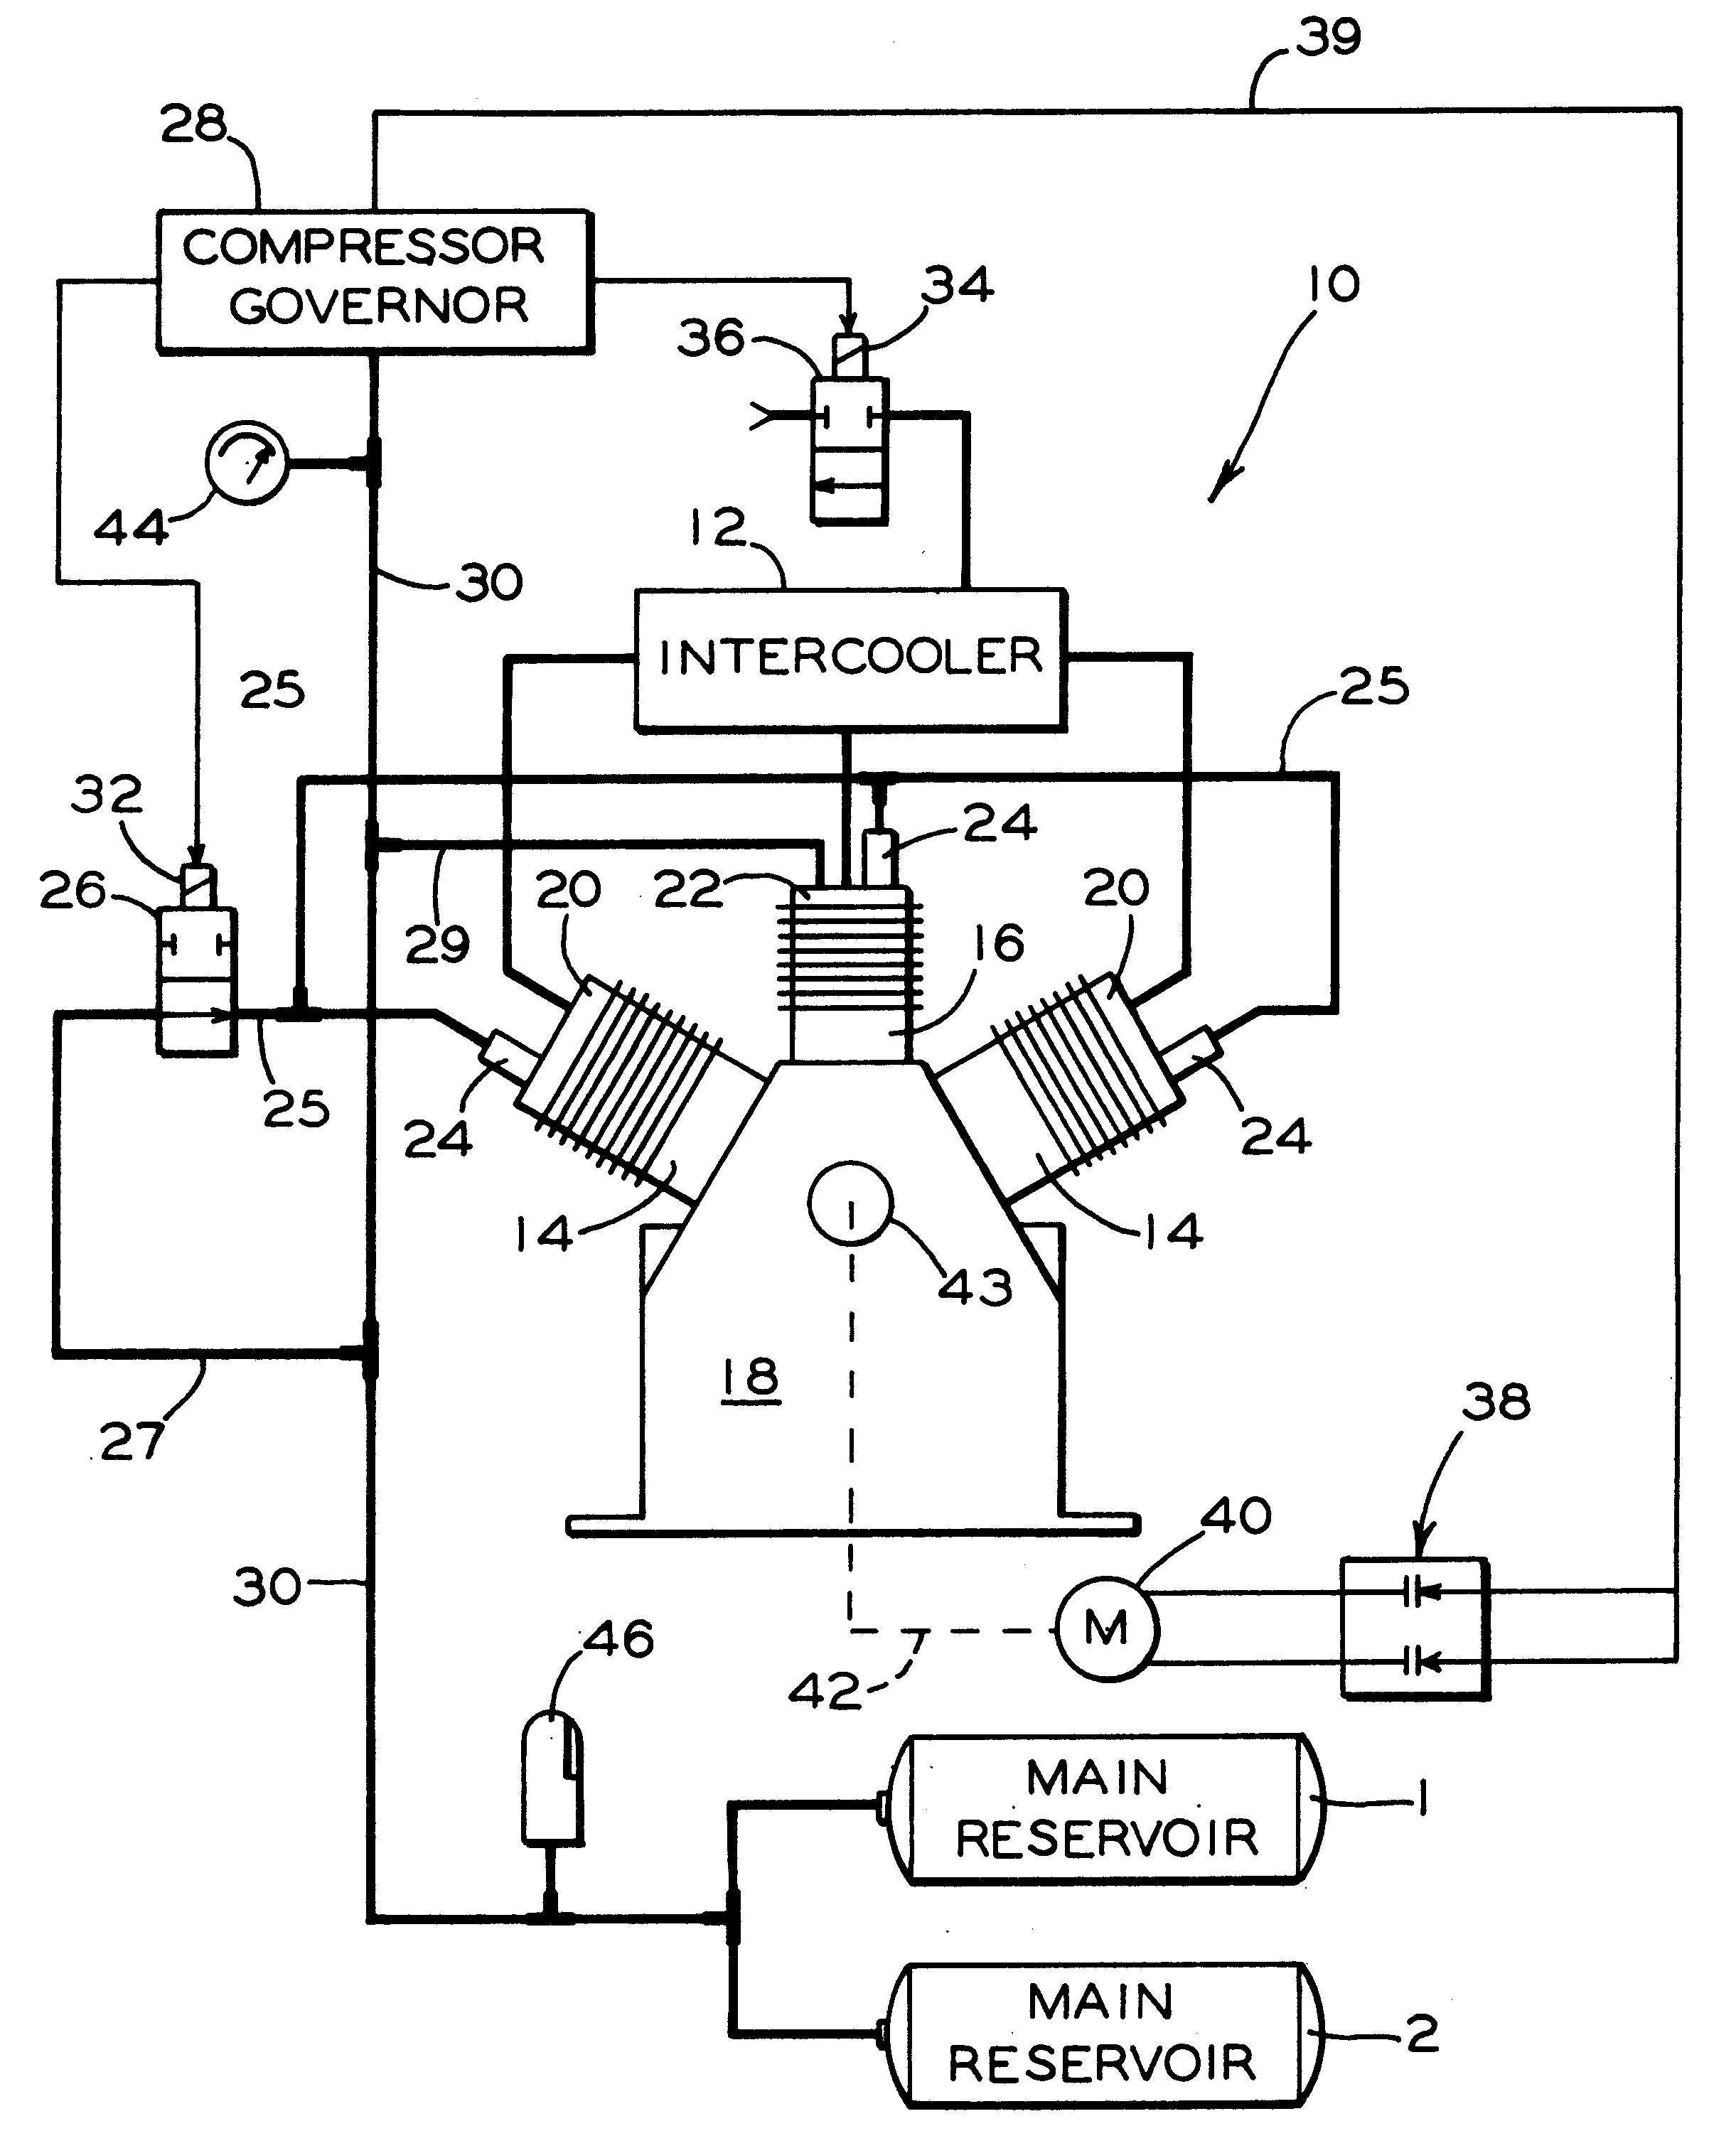 Compressor intercooler unloader arrangement